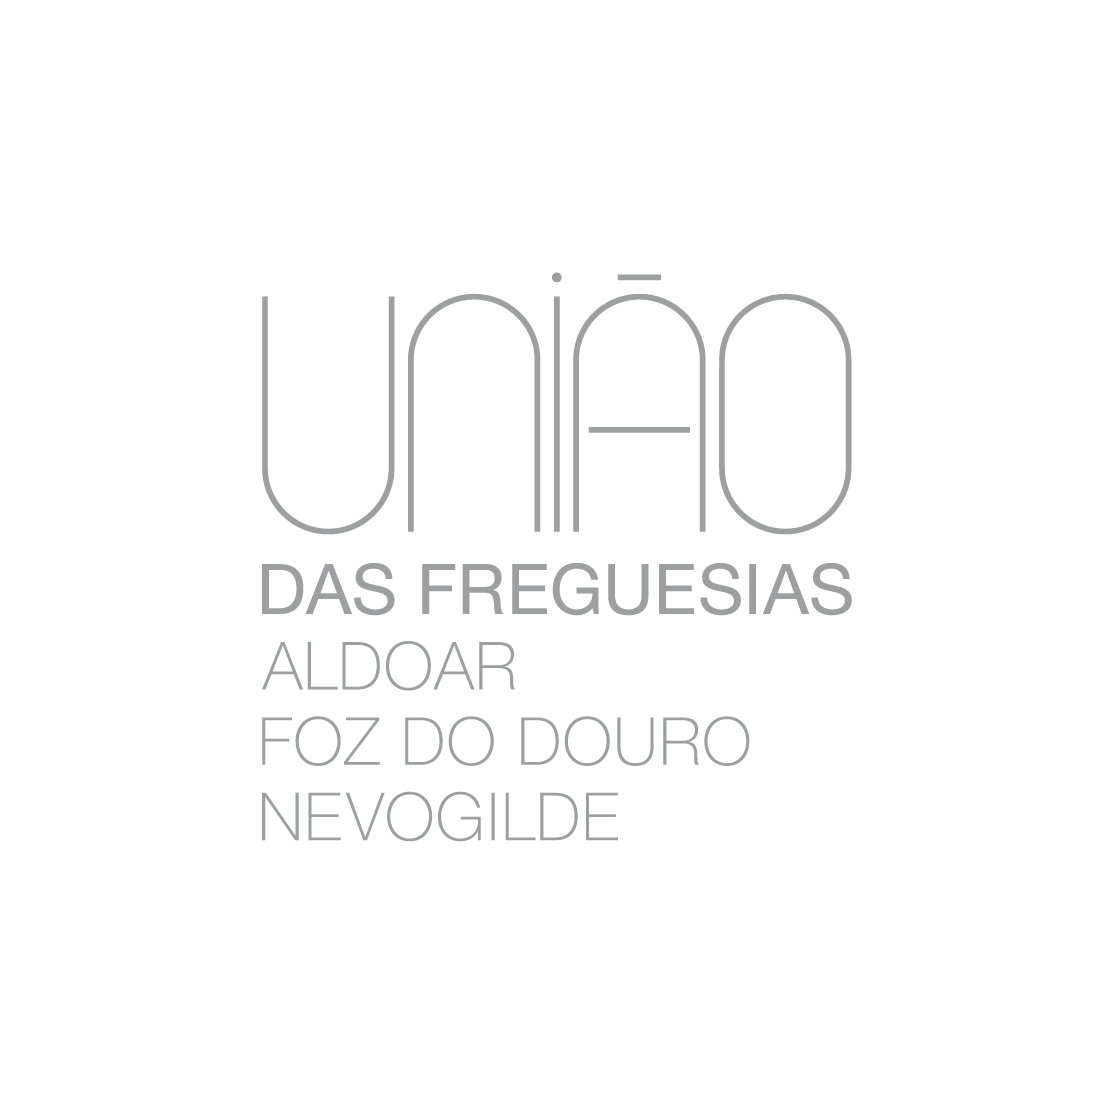 União das Freguesias de Aldoar, Foz do Douro e Nevogilde